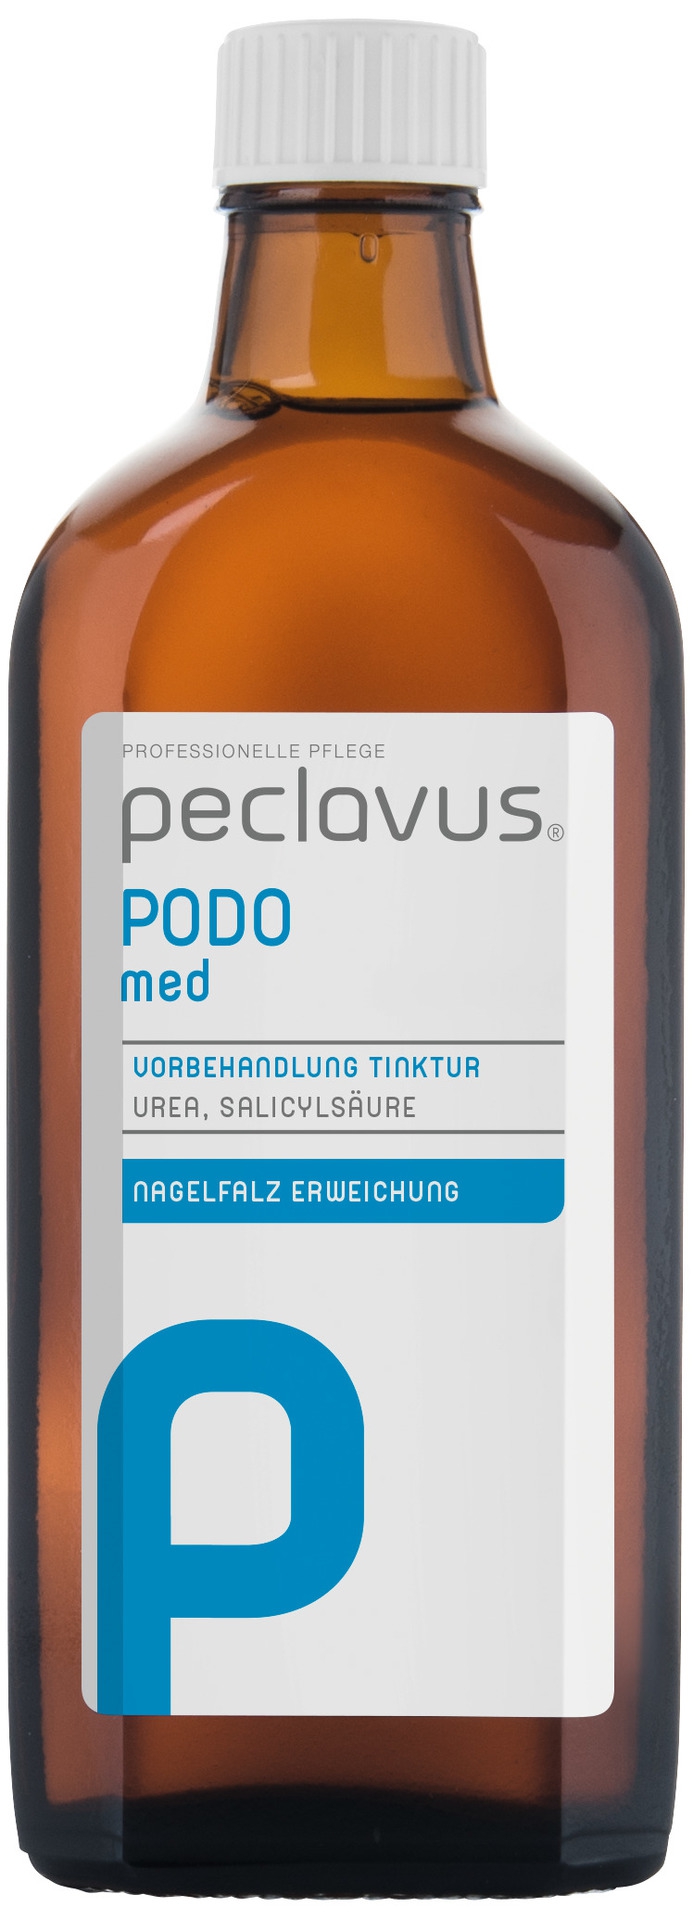 Peclavus PODOmed Vorbehandlung Tinktur | 200 ml